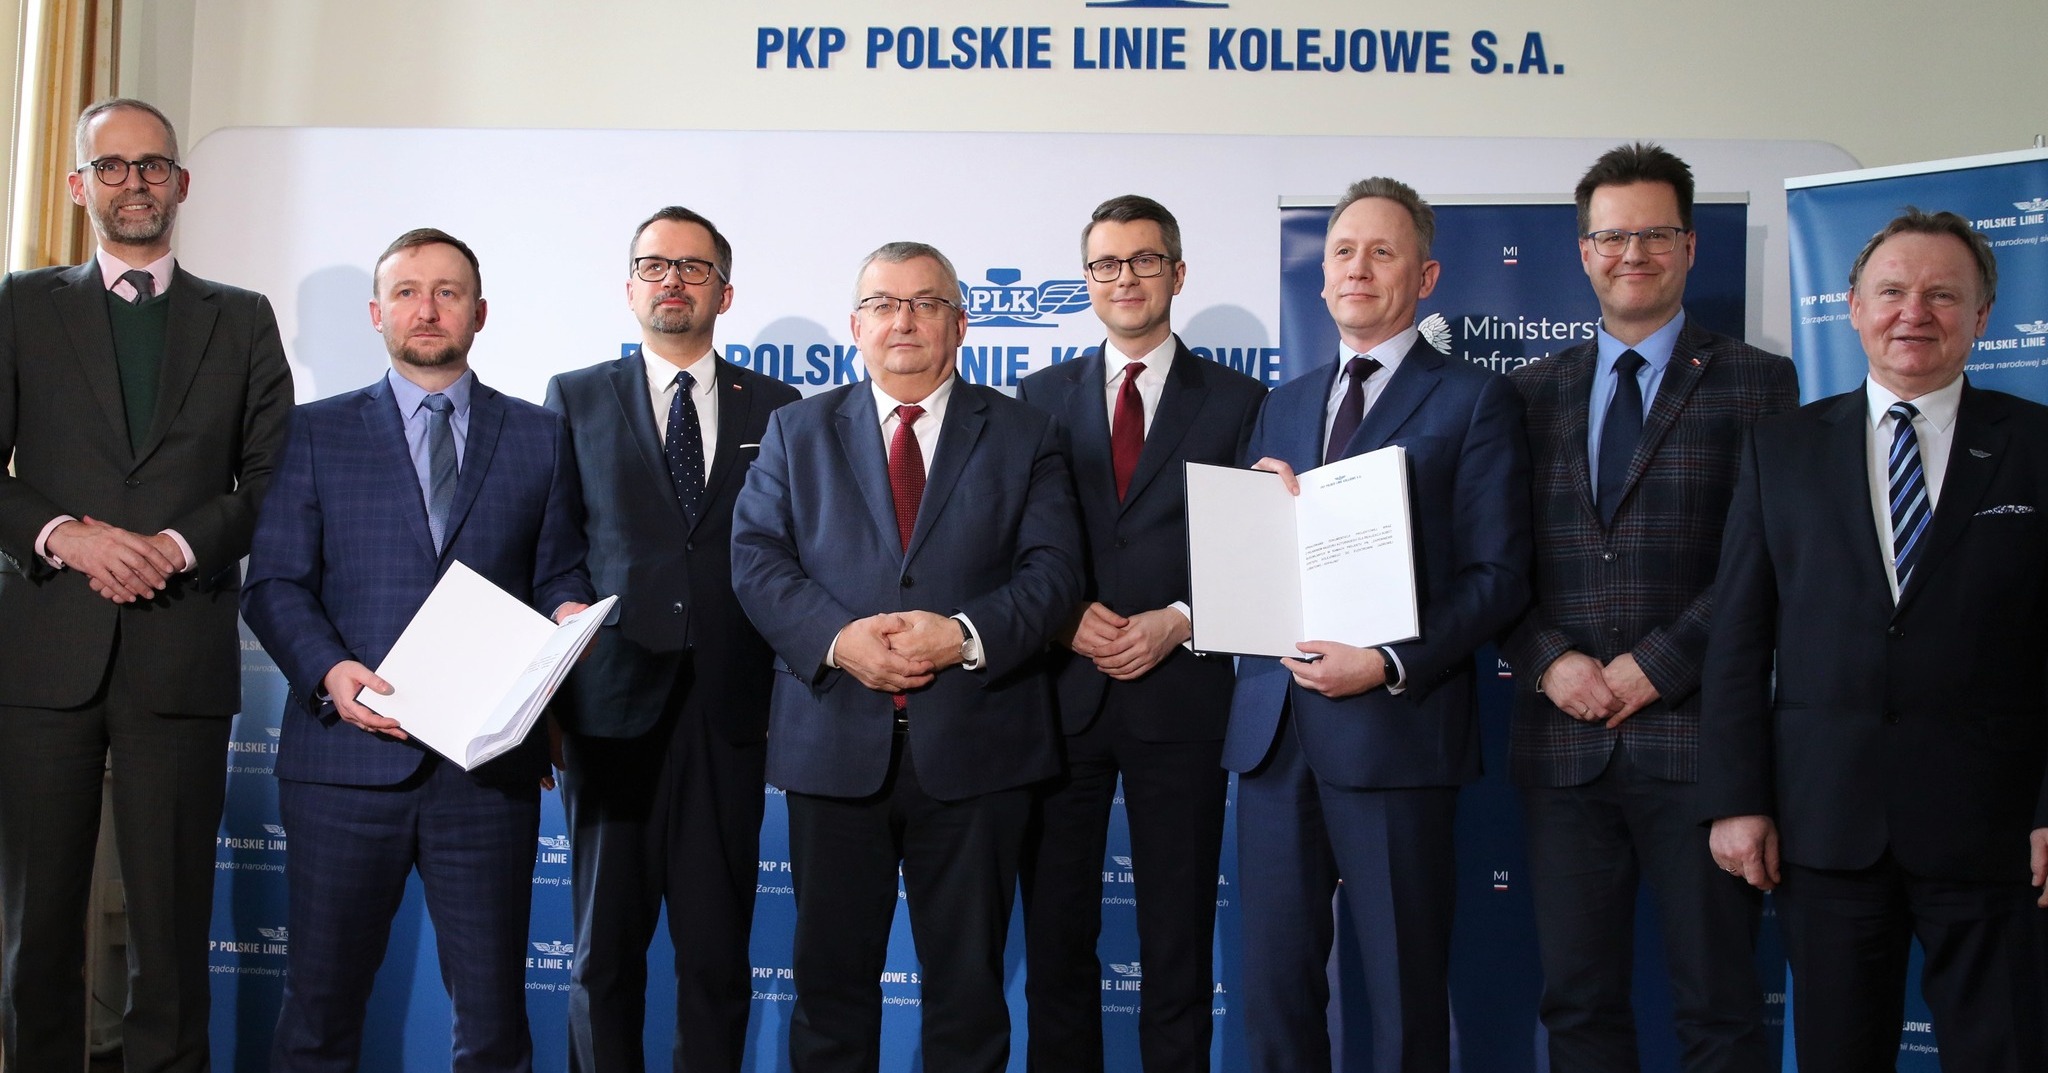 Decyzja rządu by wybudować 1. elektrownię jądrową w Polsce to kolejny element budowy bezpieczeństwa. Będzie ona budowana na Pomorzu. Dlatego  jest niezwykle ważne, by wszystkie projekty związane z elektrownią jądrową miały też wymiar społeczny.